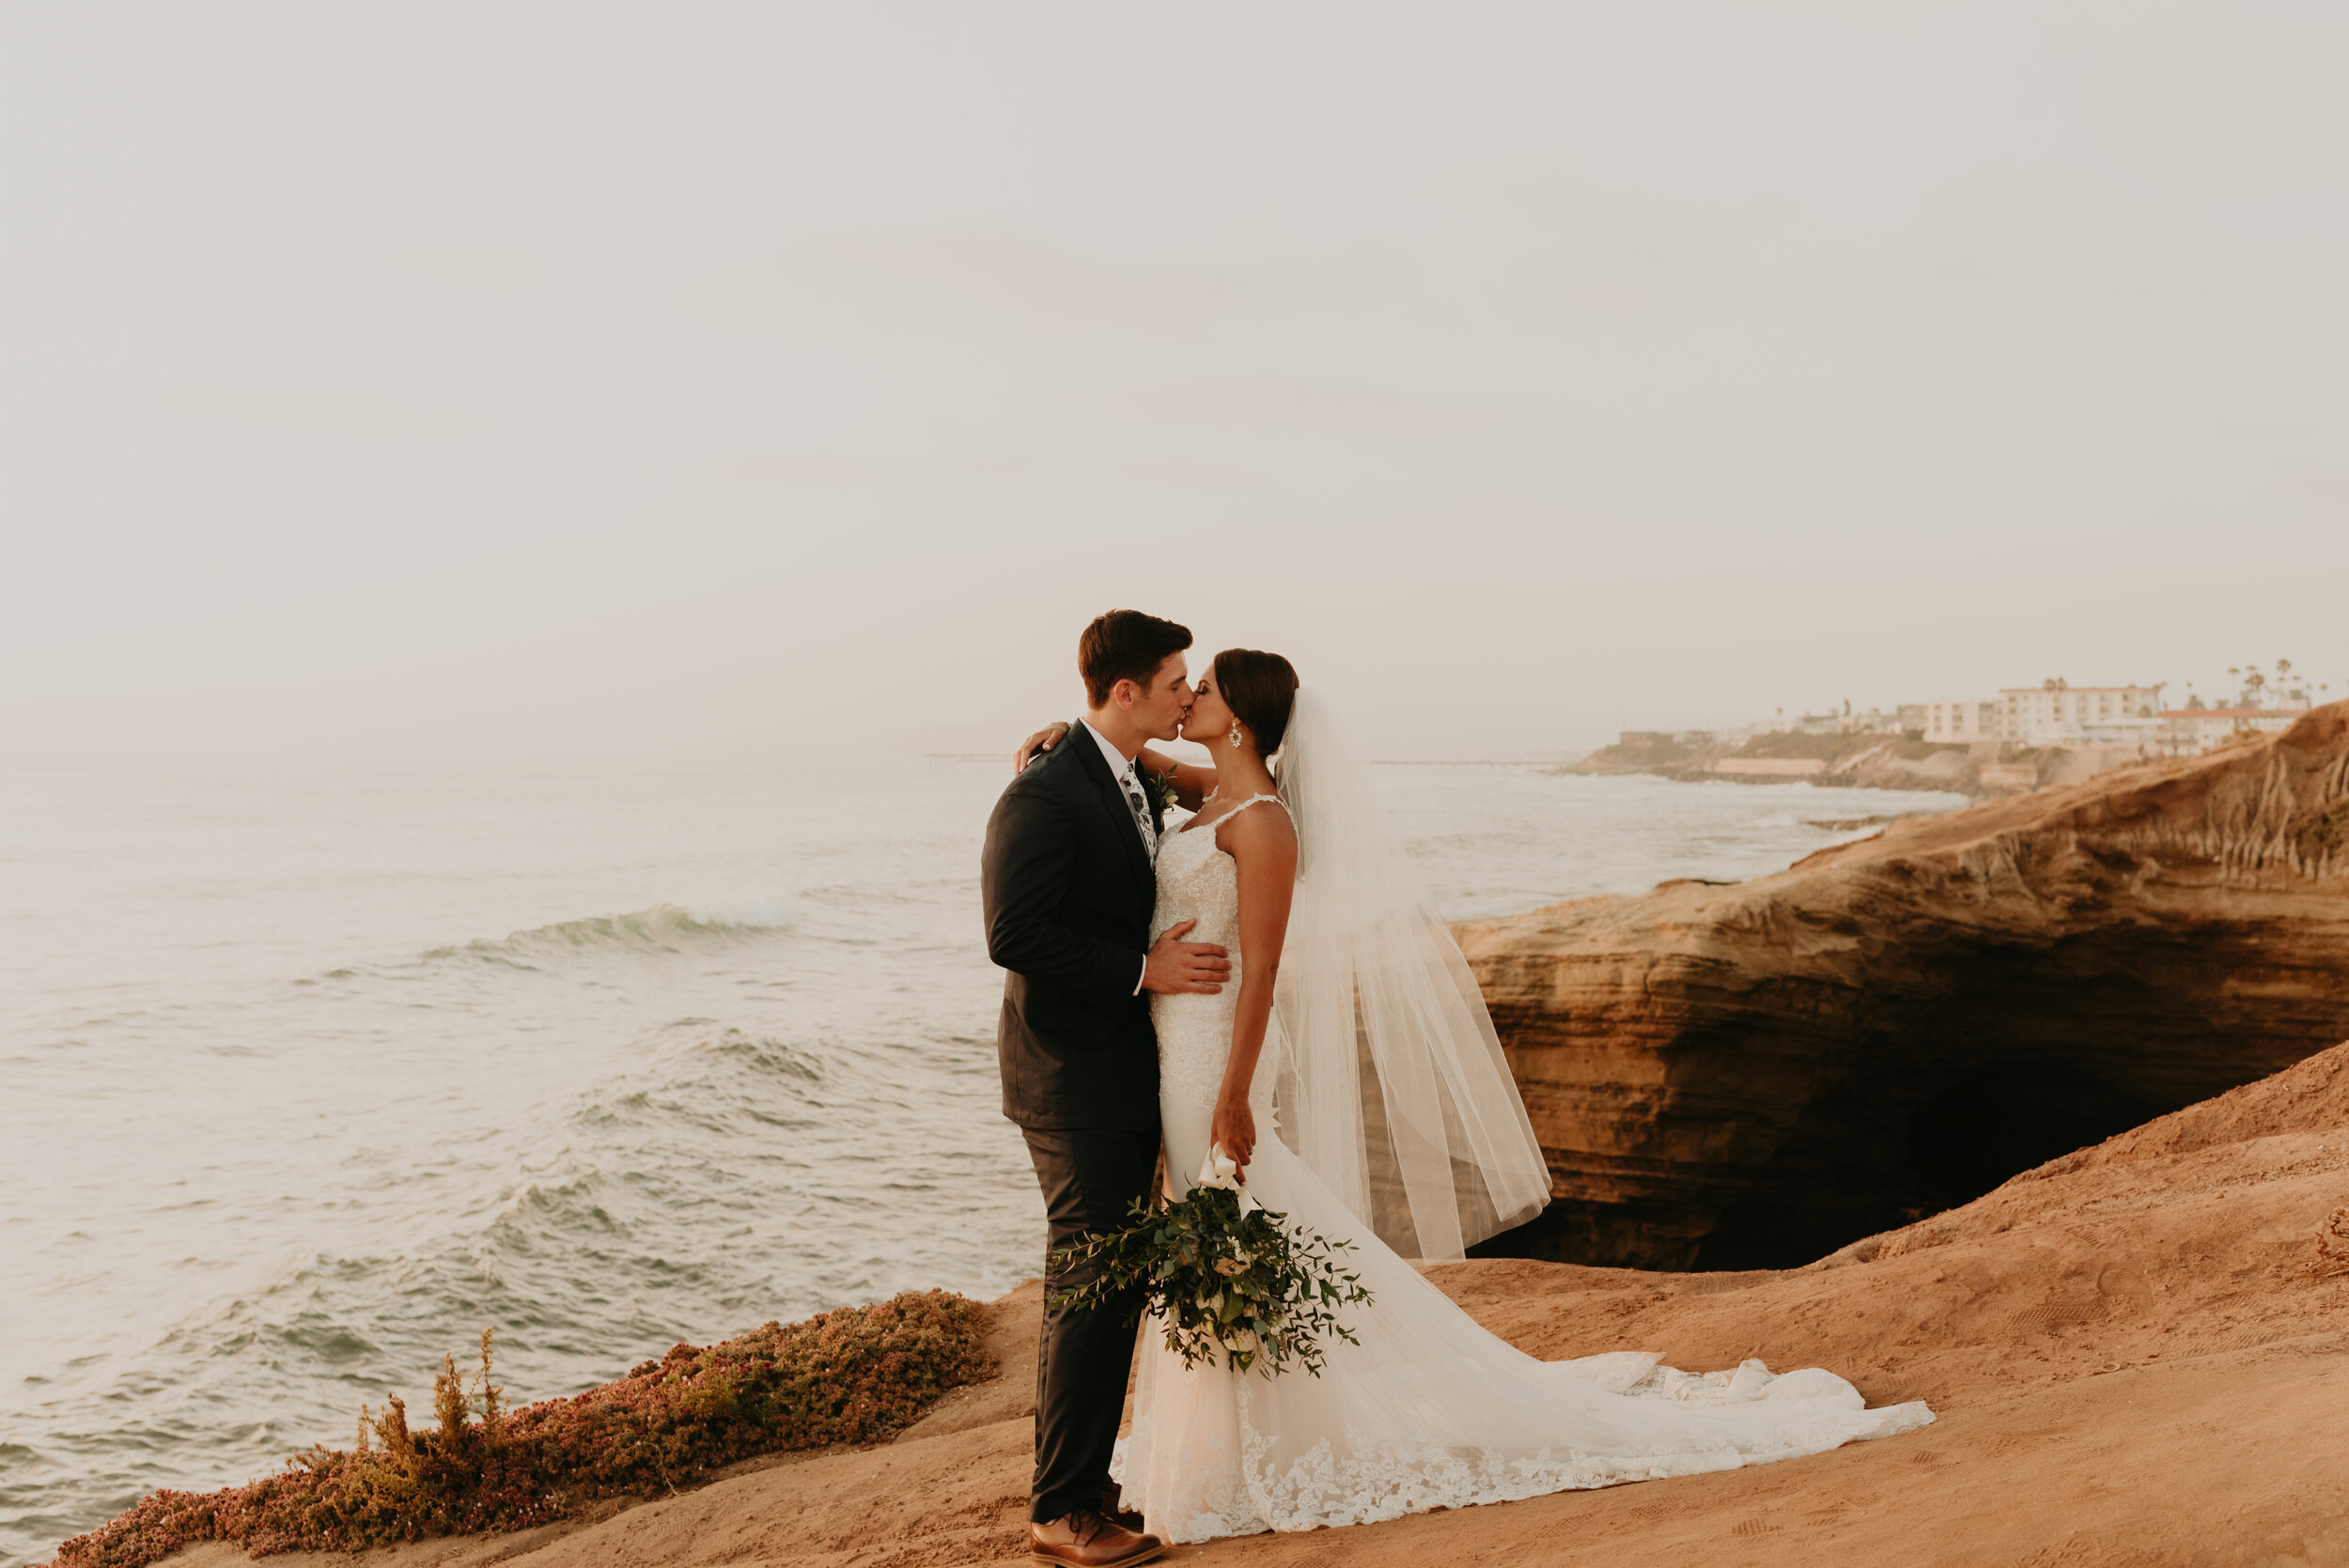 Sunset Cliffs Elopement in San Diego | Sunset Cliffs wedding portraits | San Diego Elopement Photographer | Southern California elopement photographer | couple eloping in san diego | beach elopement 